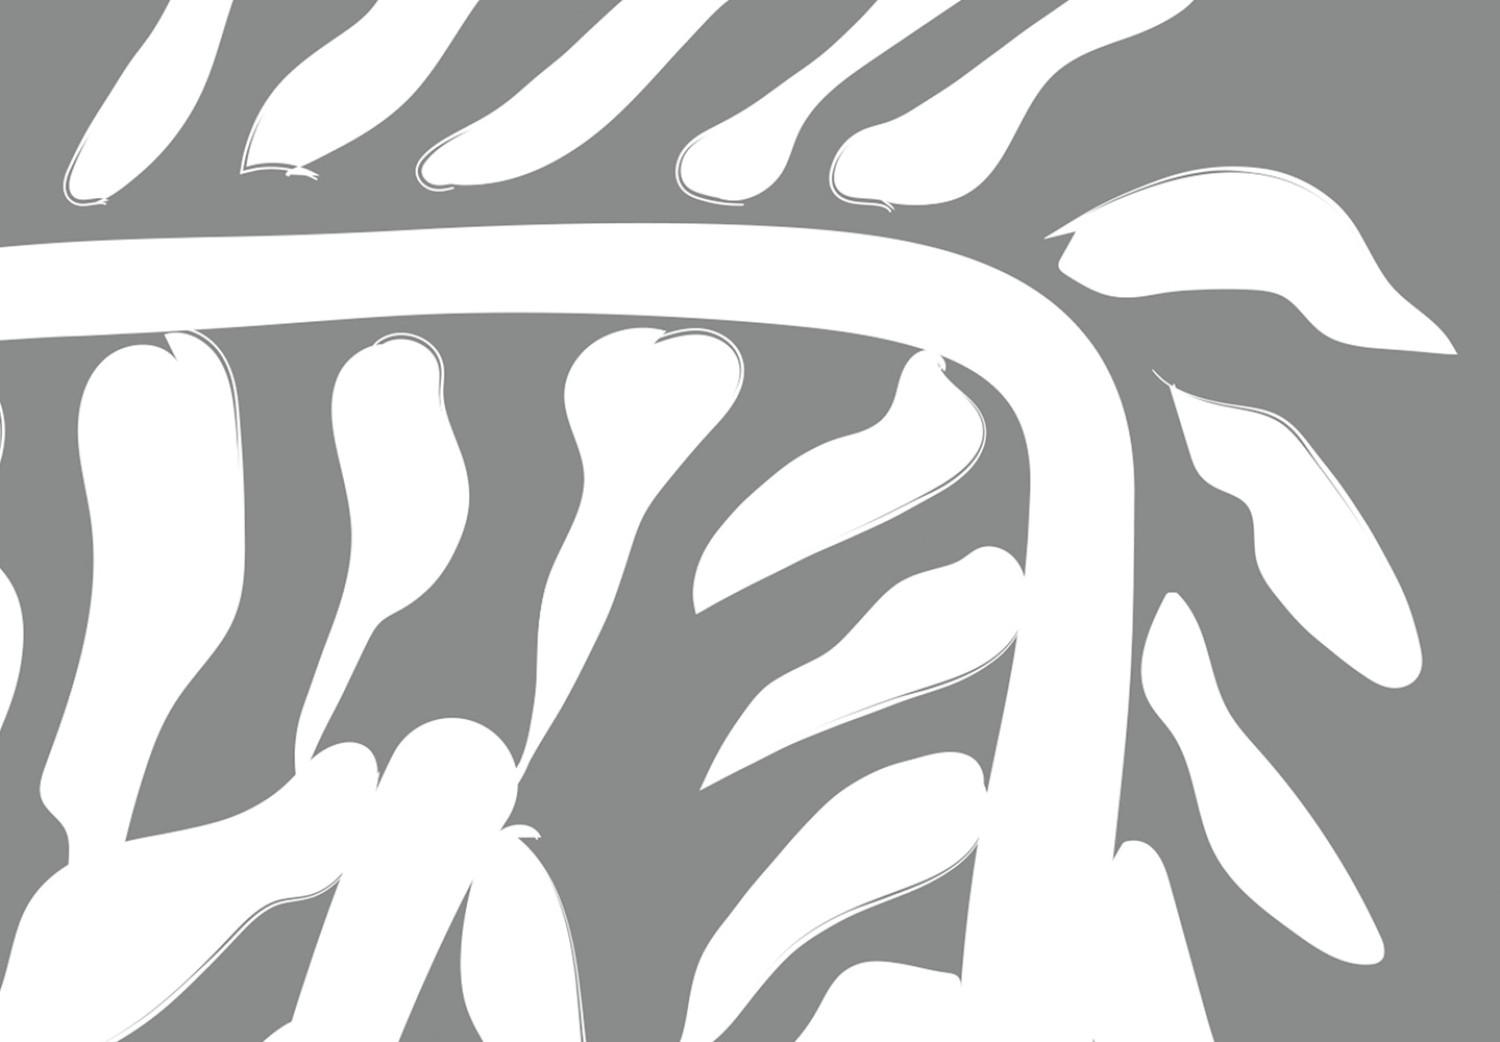 Cuadro moderno Planta serpiente - abstracto con motivo botánico sobre fondo gris